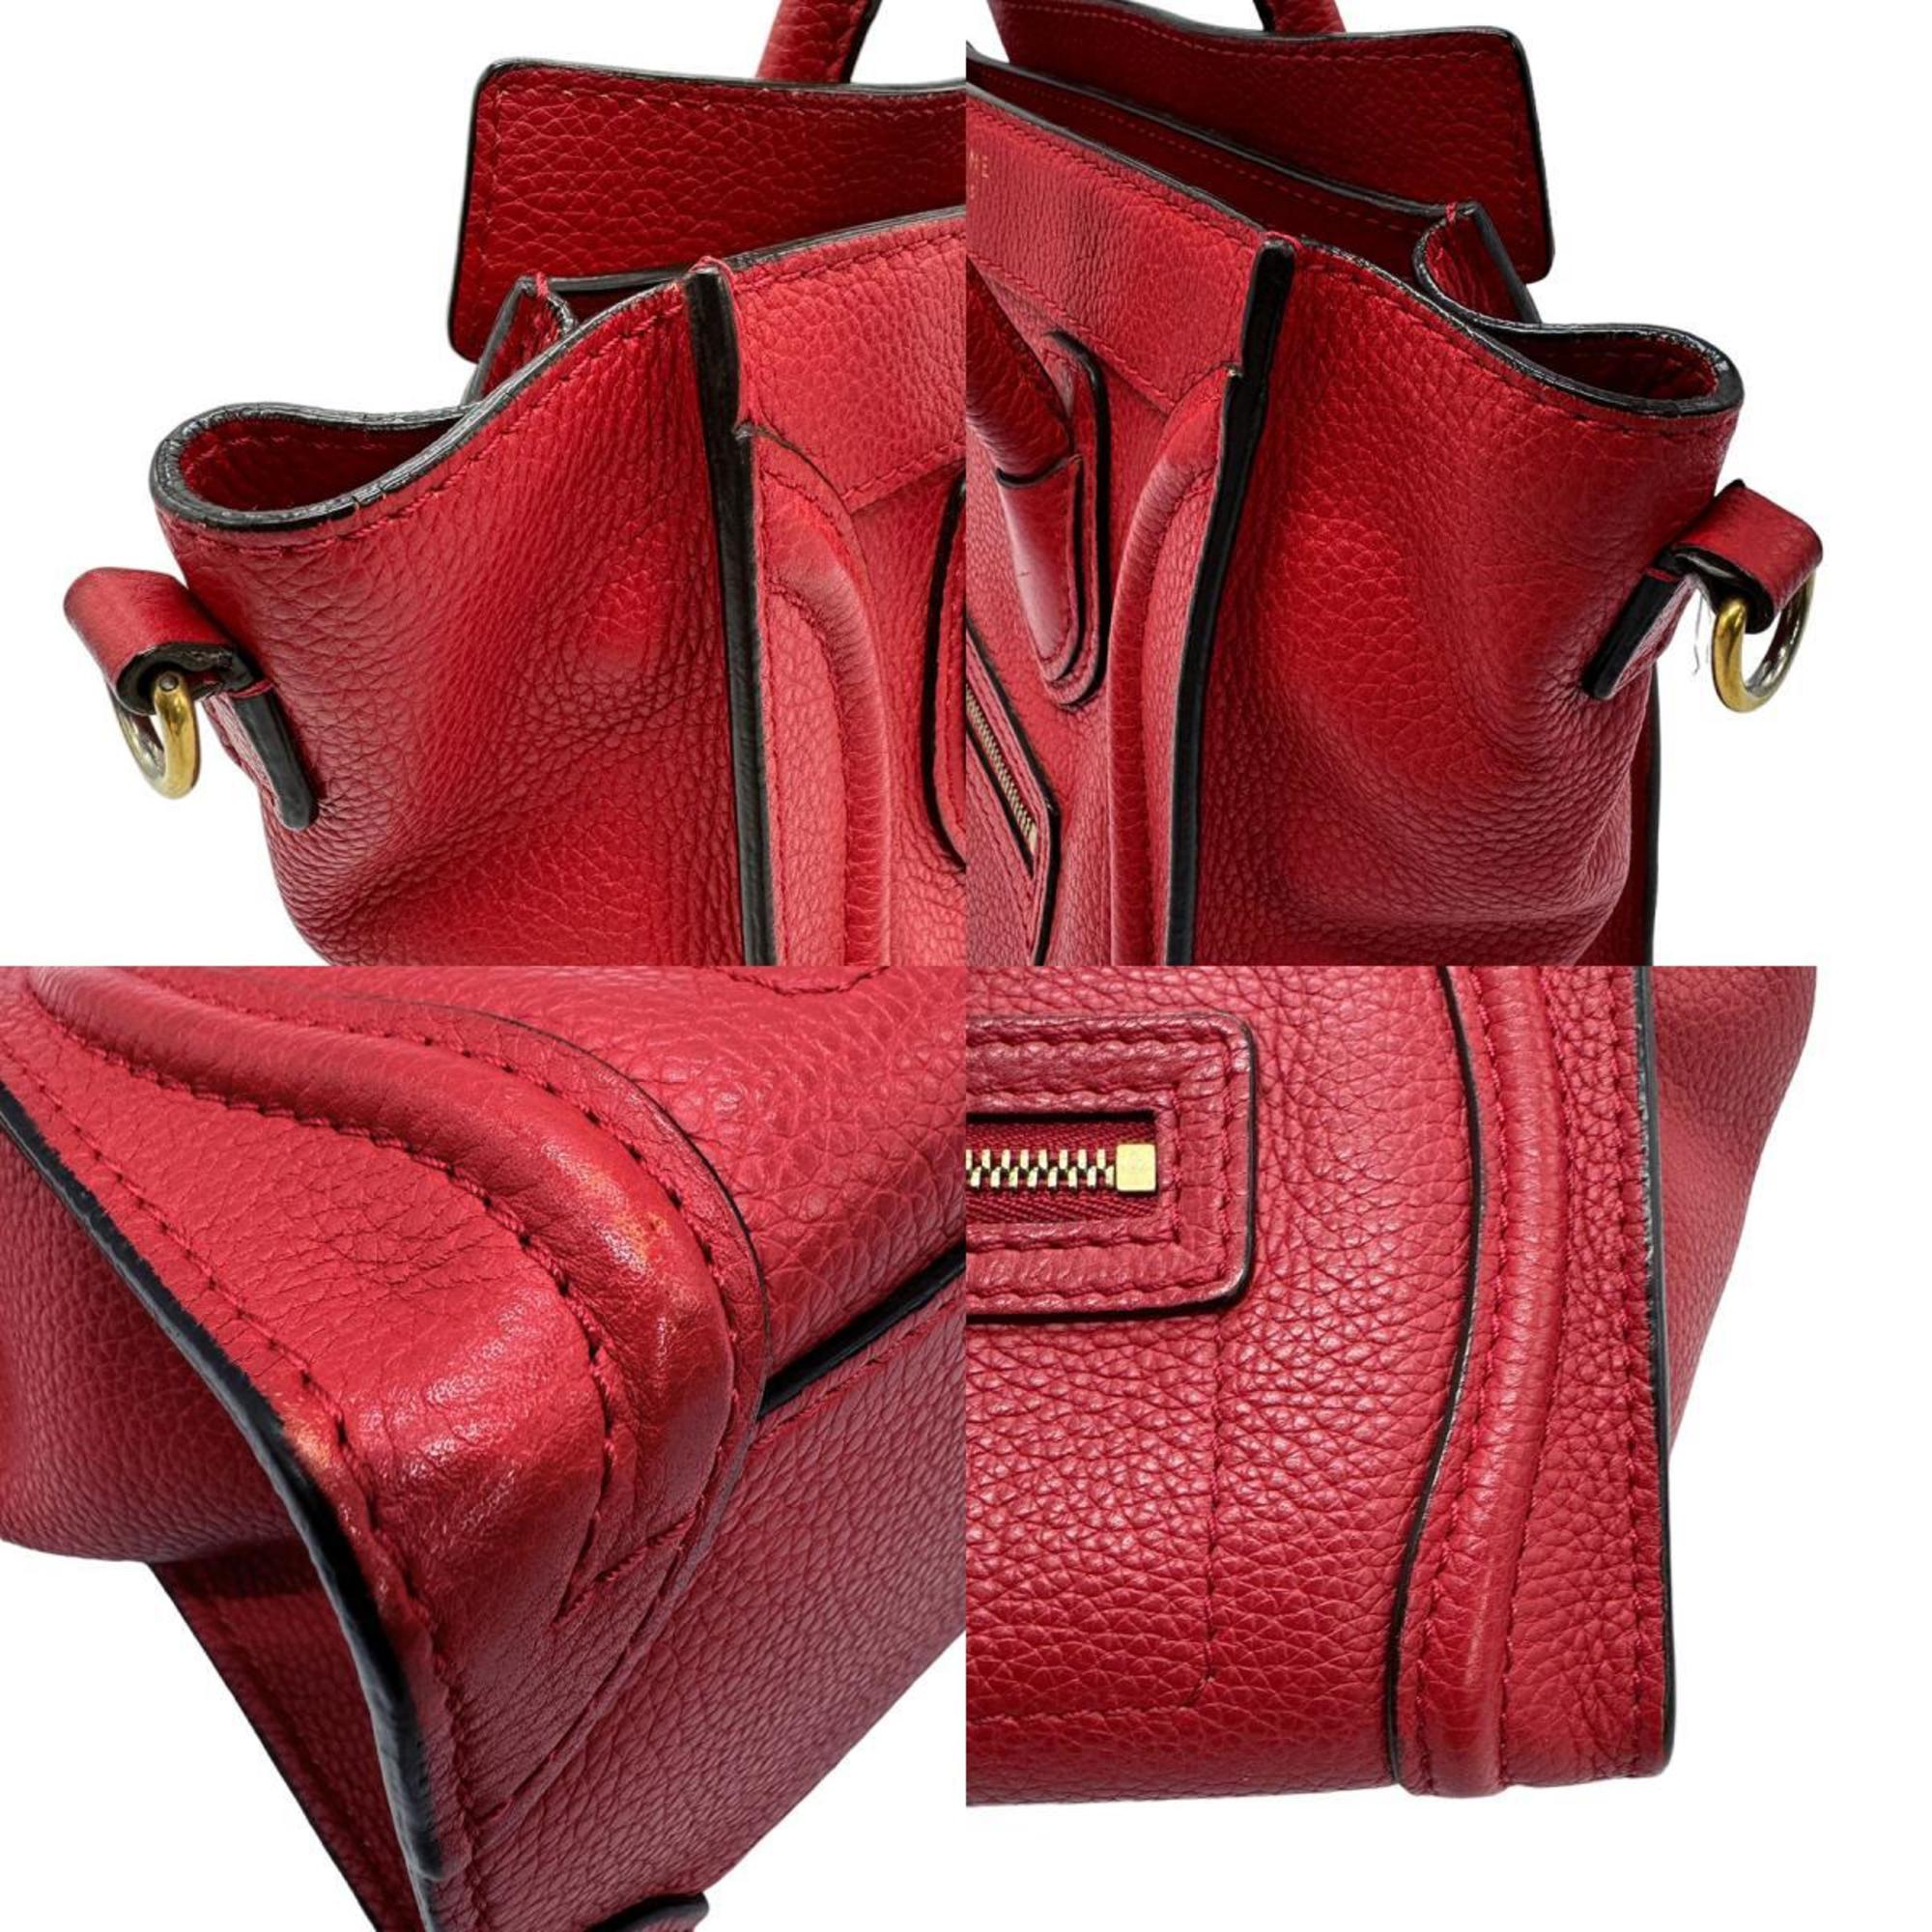 CELINE Handbag Shoulder Bag Luggage Nano Shopper Leather Red Women's z0665